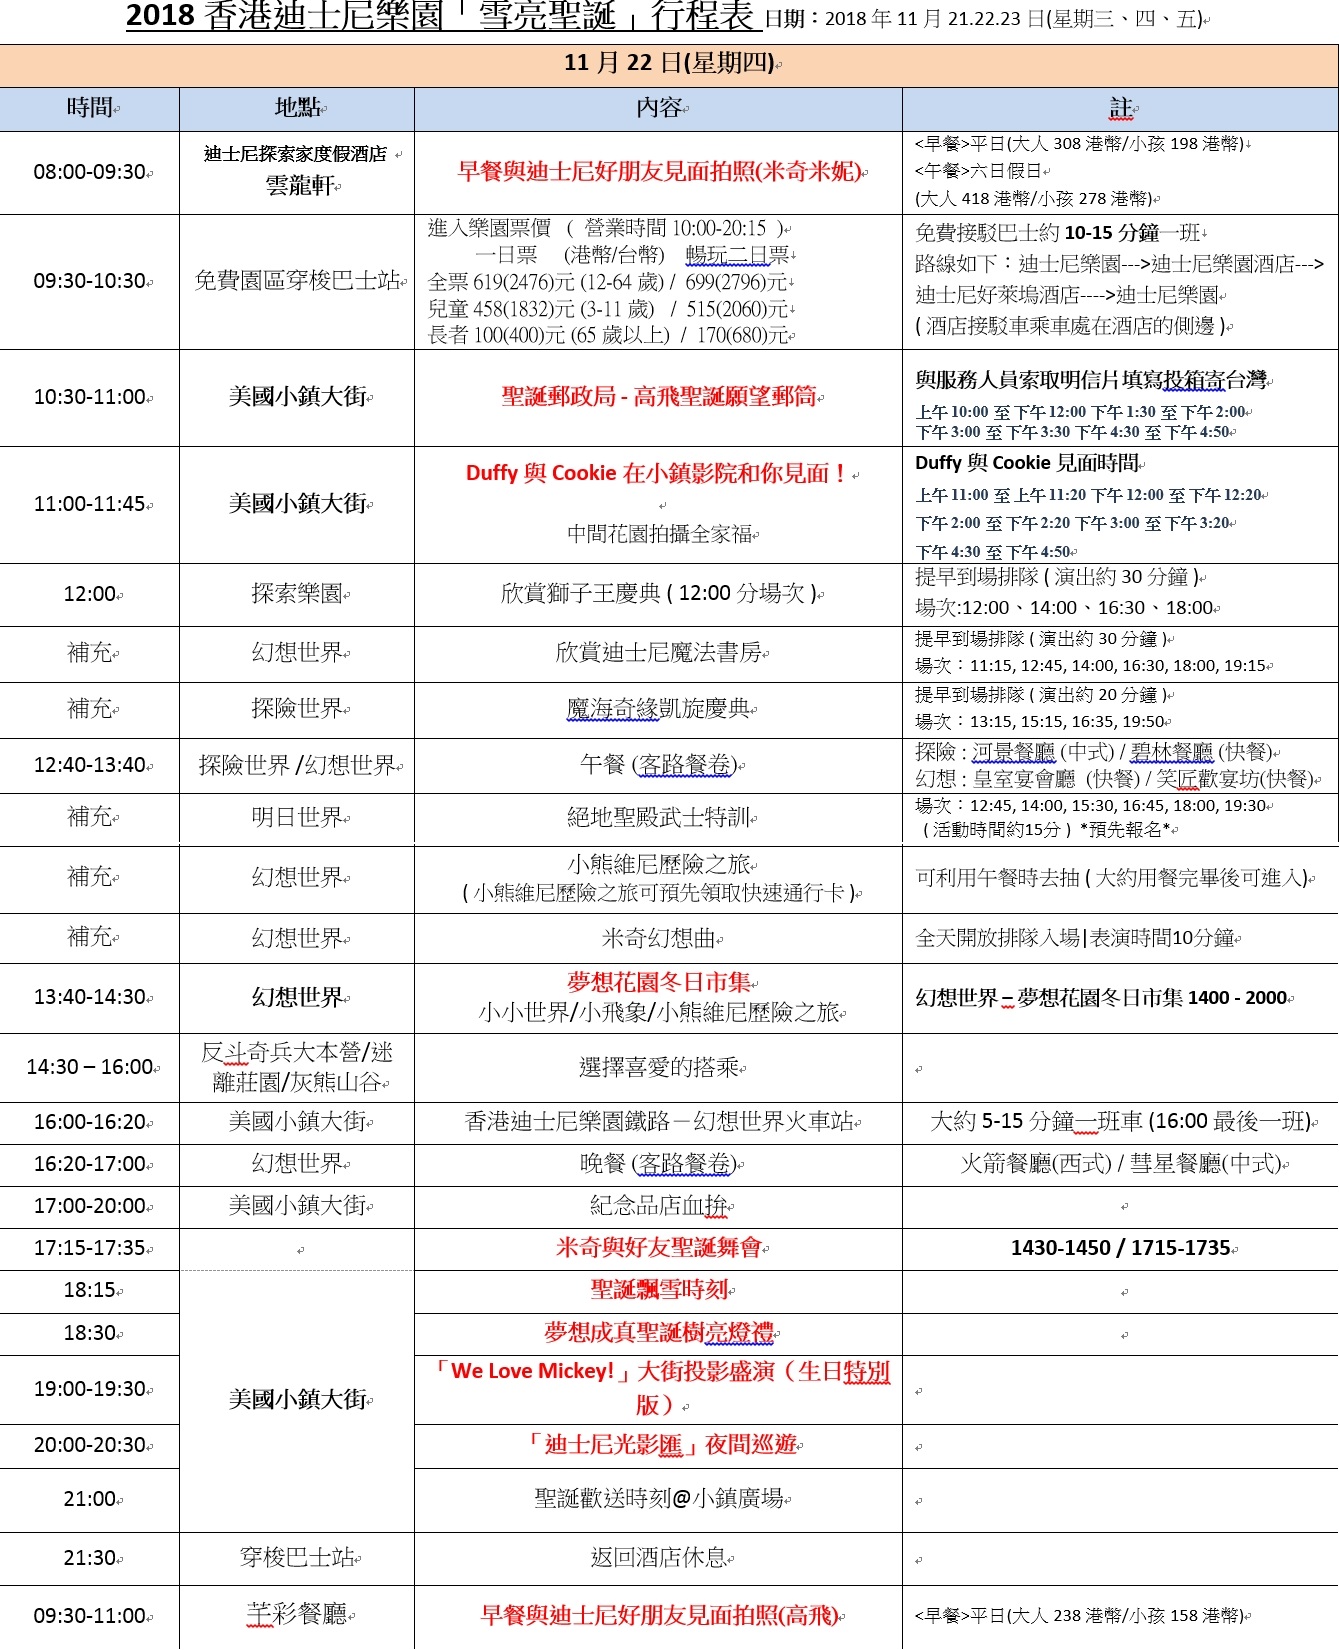 香港迪士尼樂園行程表-20181119(新版)